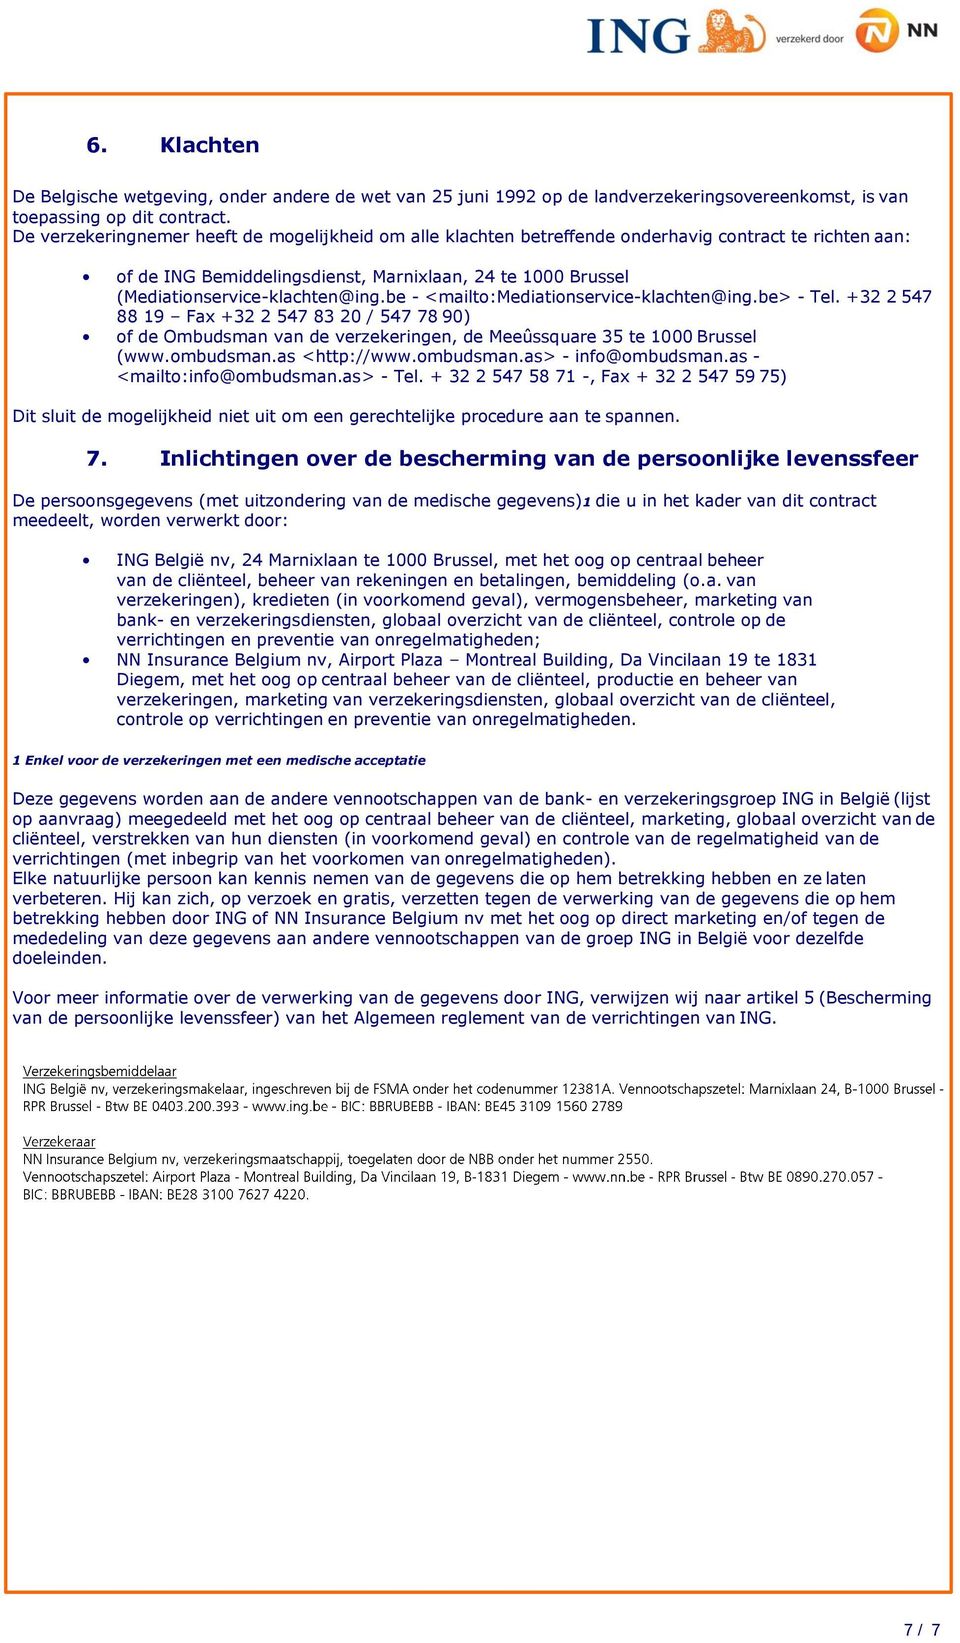 be - <mailto:mediationservice-klachten@ing.be> - Tel. +32 2 547 88 19 Fax +32 2 547 83 20 / 547 78 90) of de Ombudsman van de verzekeringen, de Meeûssquare 35 te 1000 Brussel (www.ombudsman.